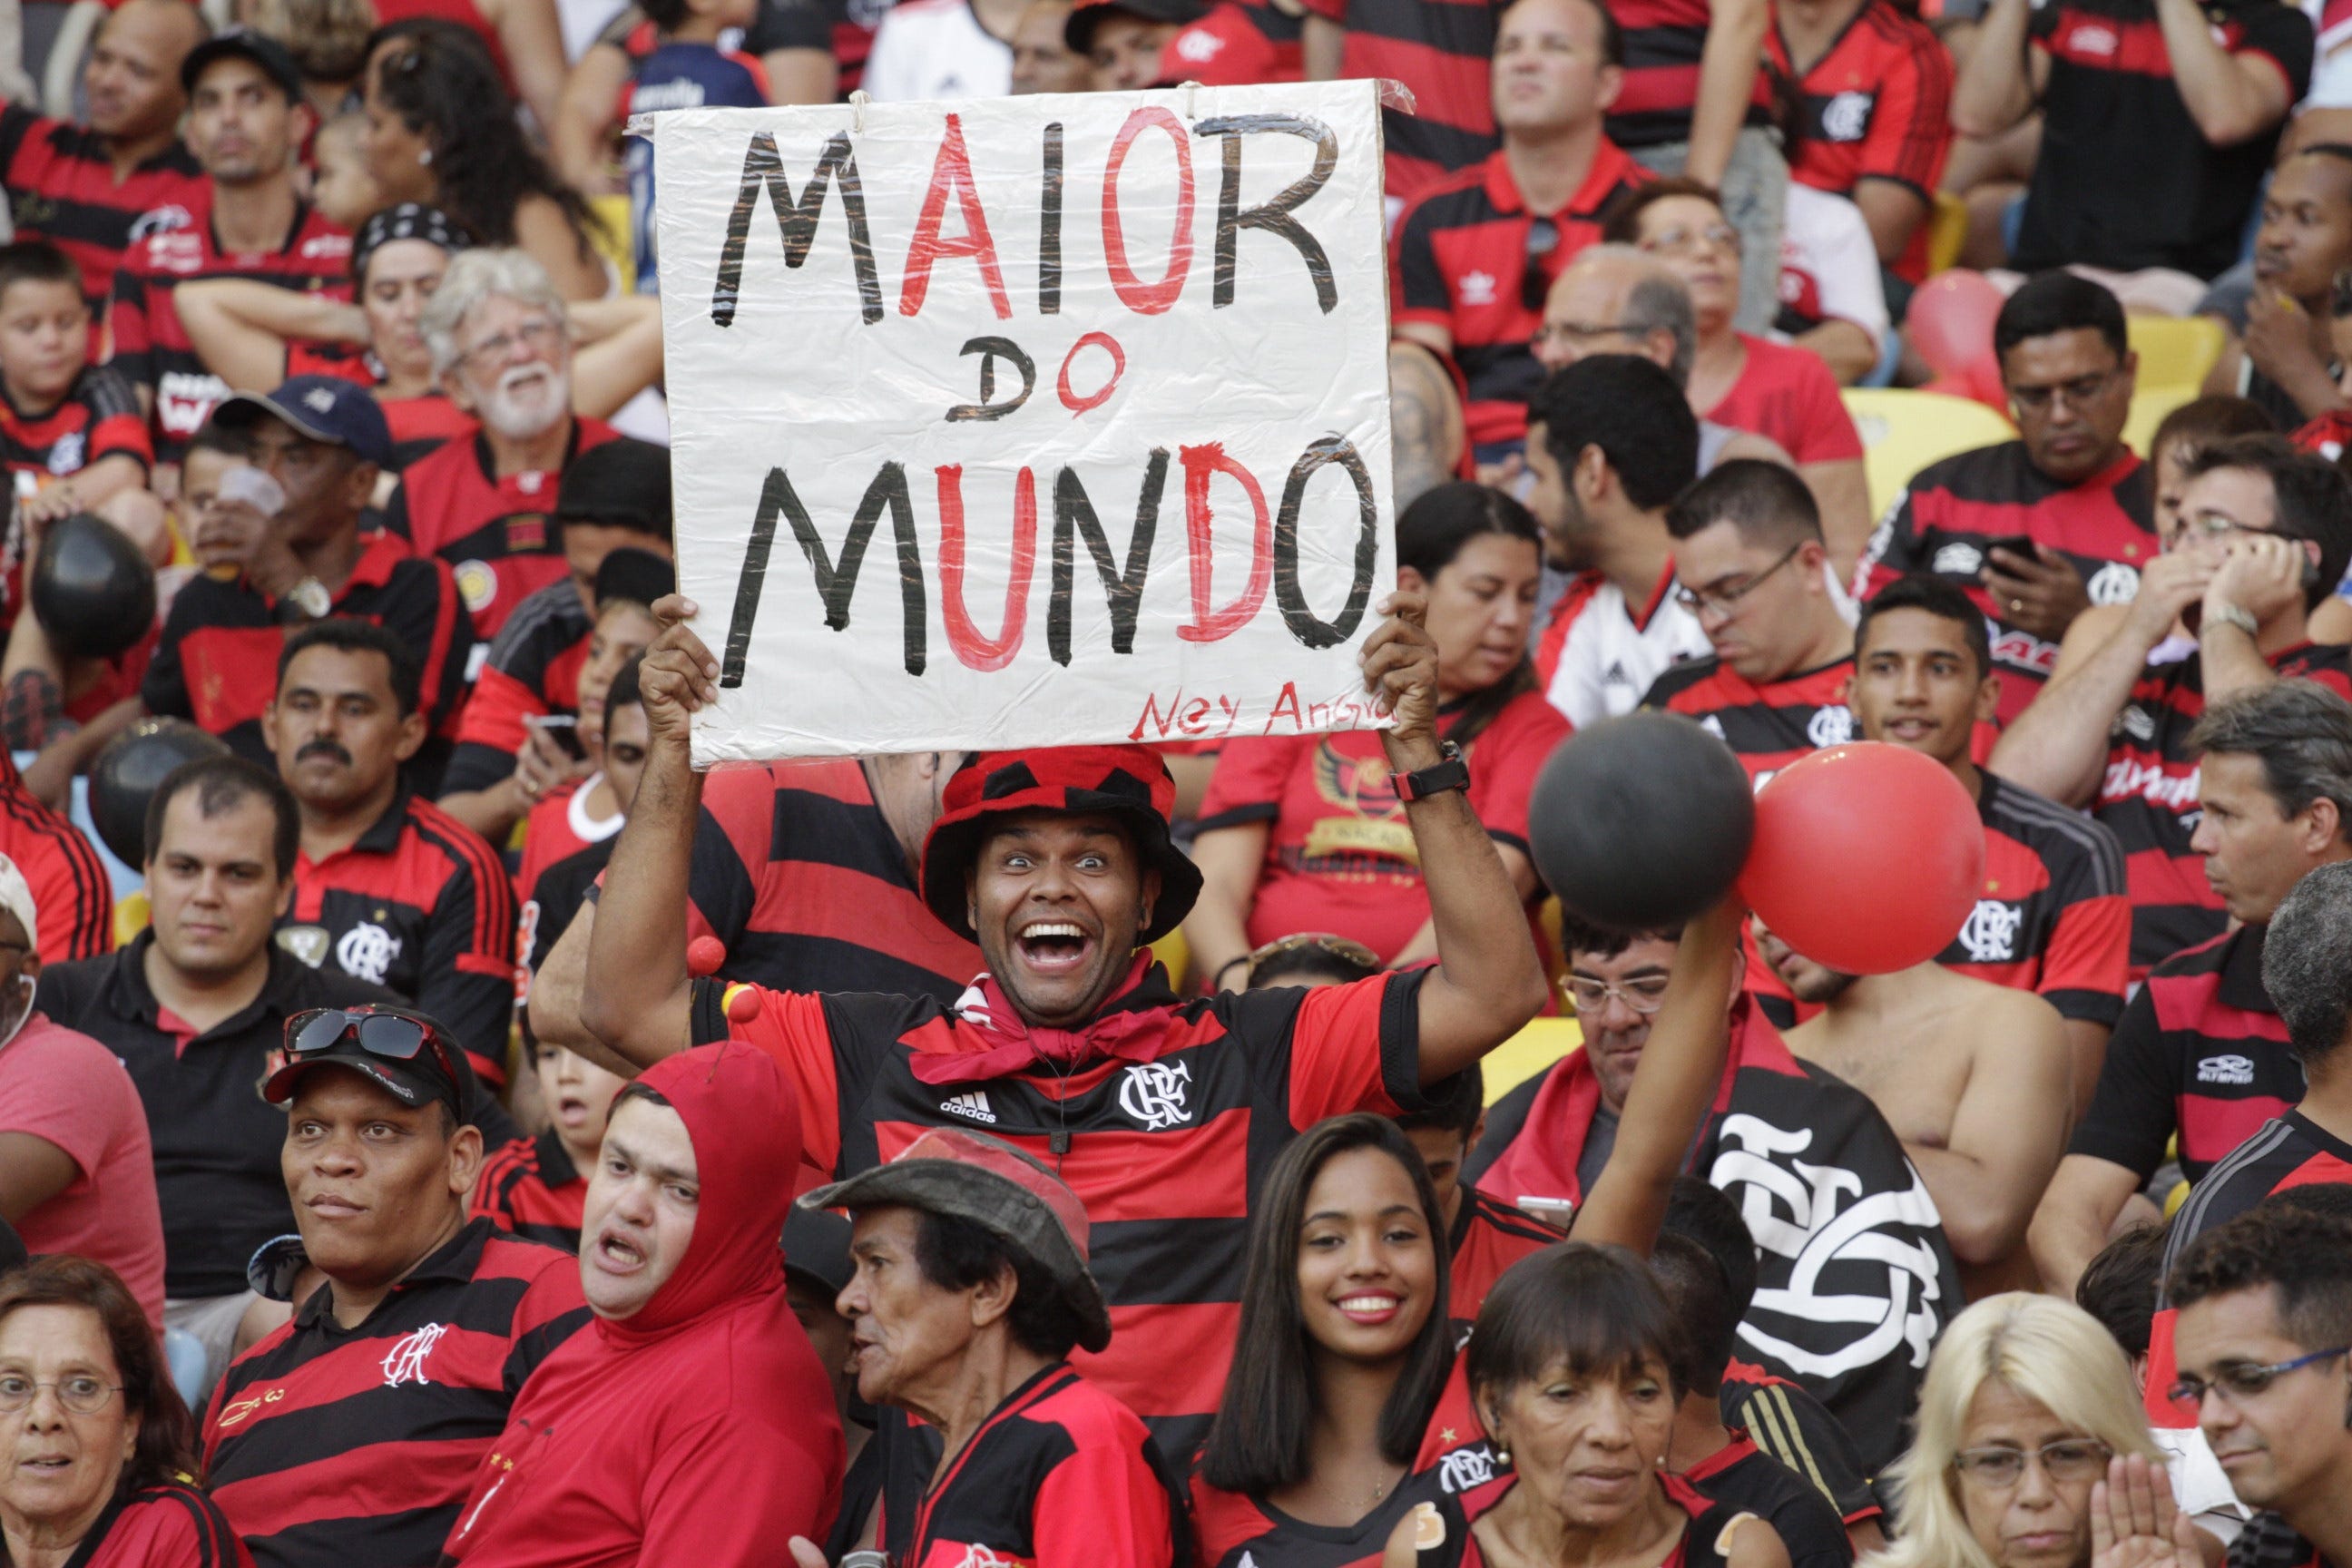 Torcida do Flamengo supera R$ 100 mil em arrecadação com 'tropa da  vaquinha'; veja detalhes de festa para final da Copa do Brasil - Lance!